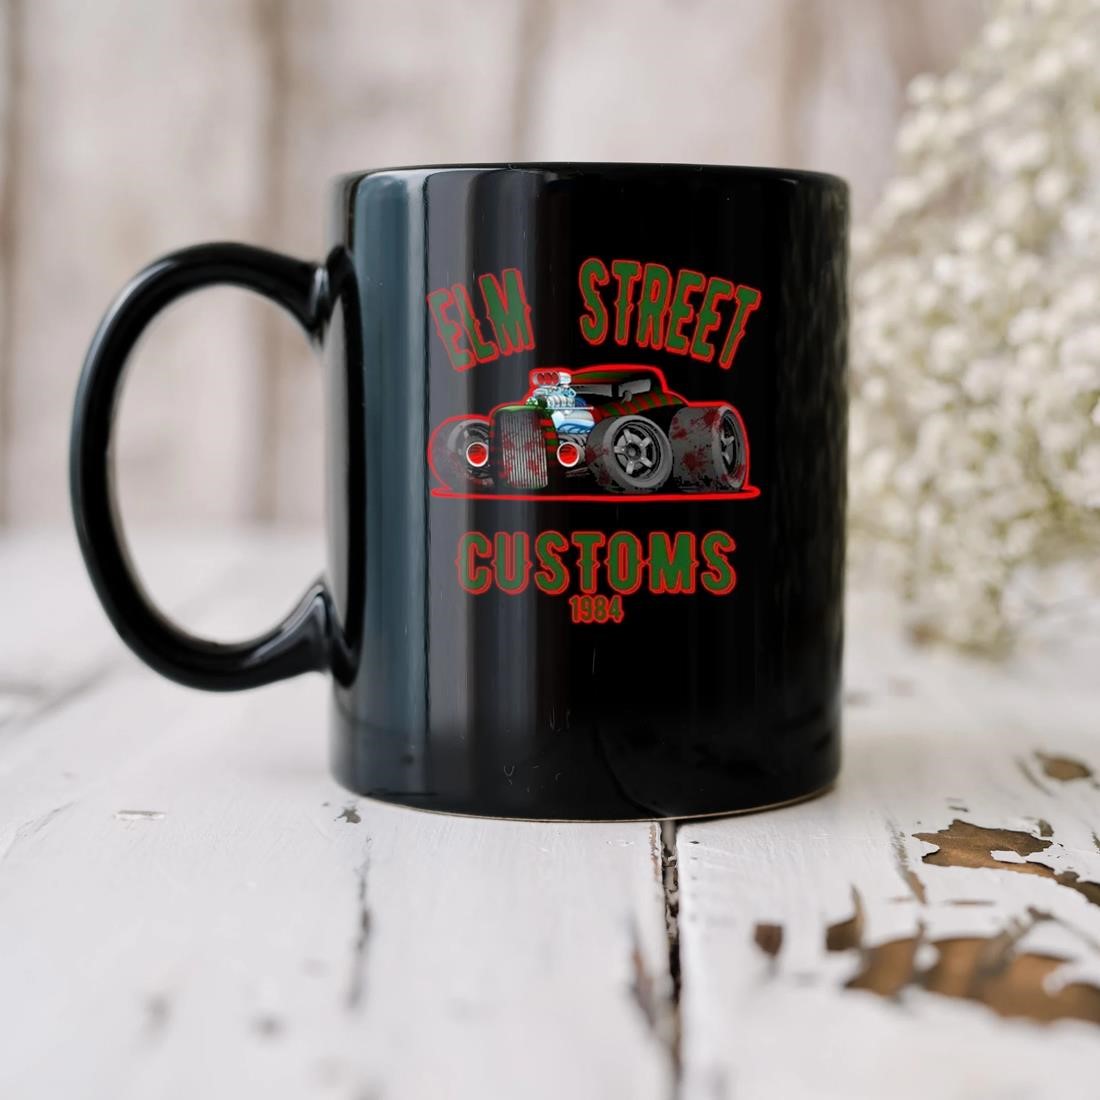 Elm Street Customs 1984 Mug biu.jpg